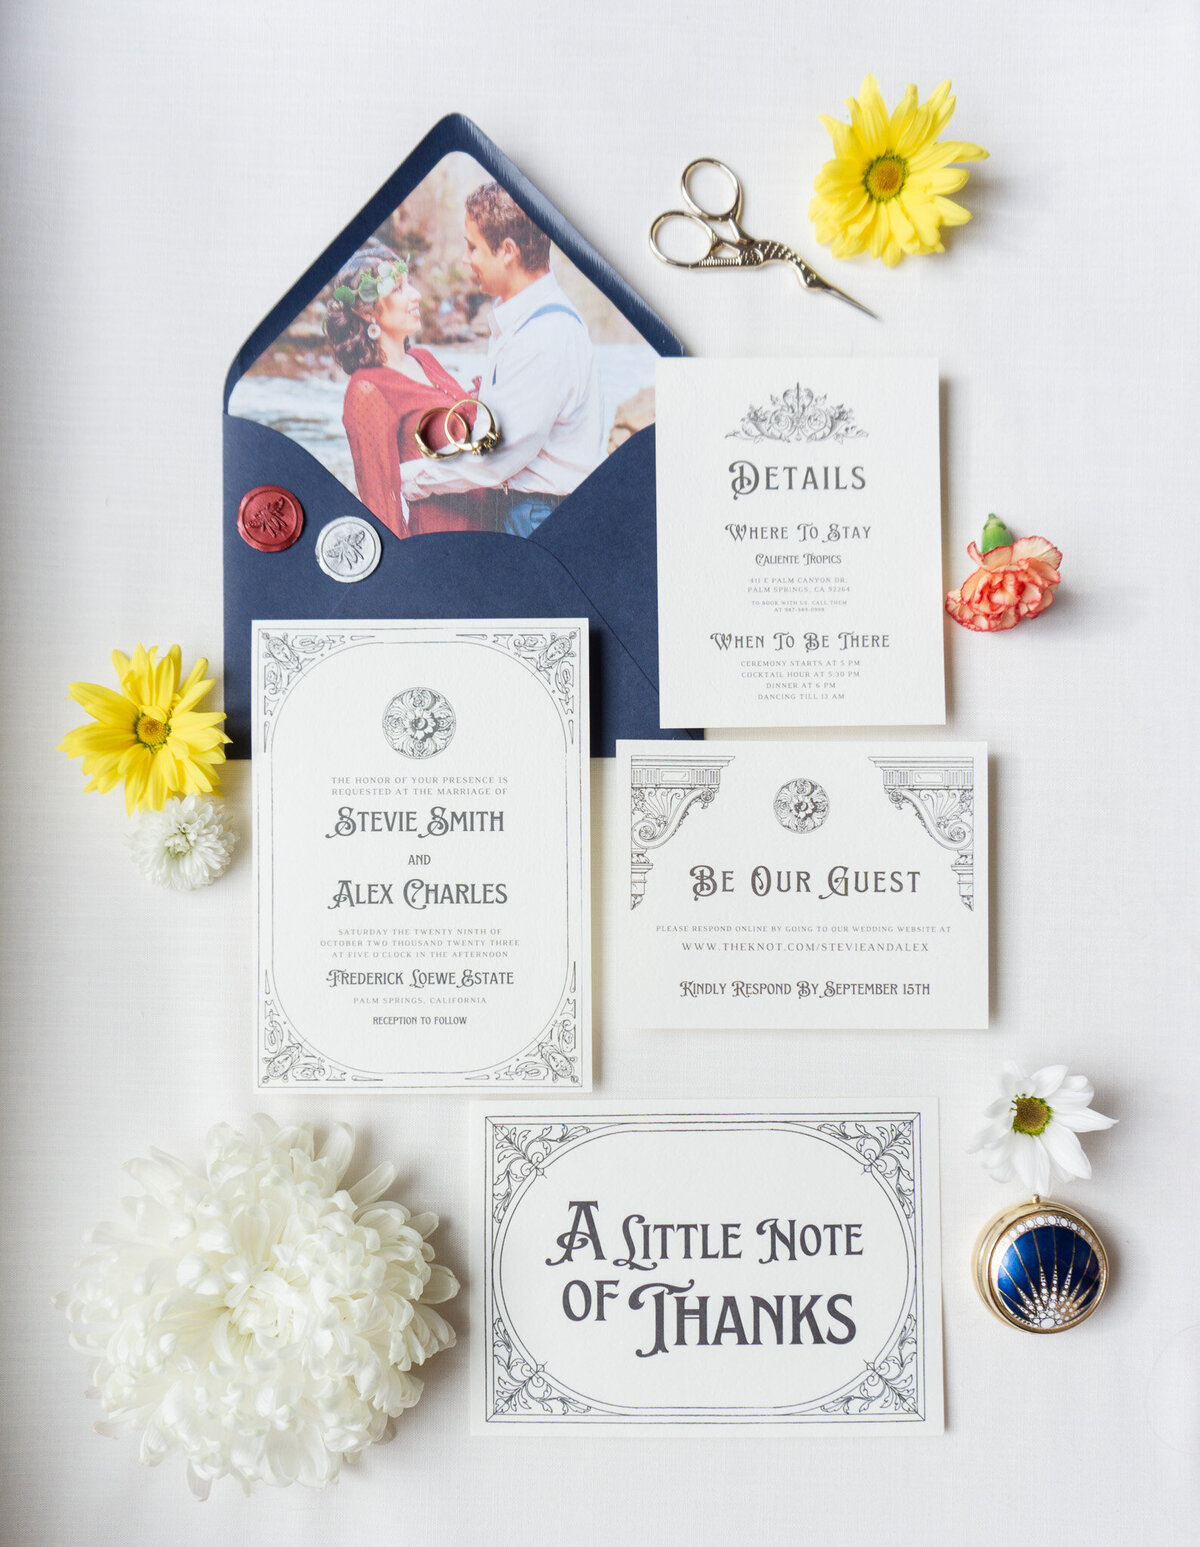 full Wedding Invitations suite with elegant illustrations